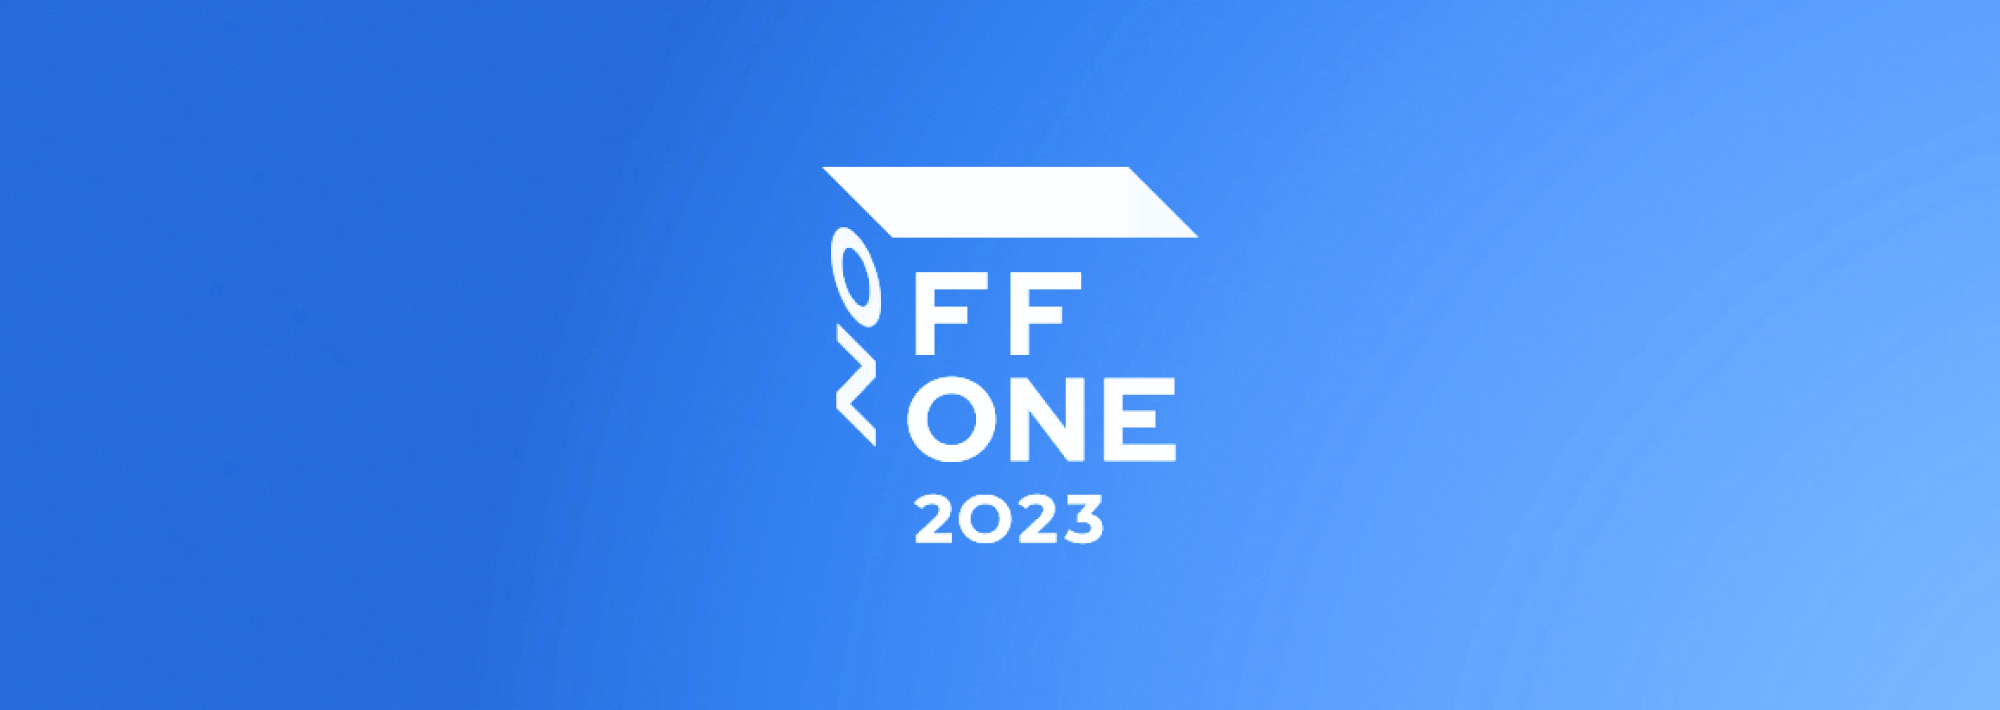 Swordfish Security — партнер OFFZONE 2023: организуем стенд и поделимся экспертизой.